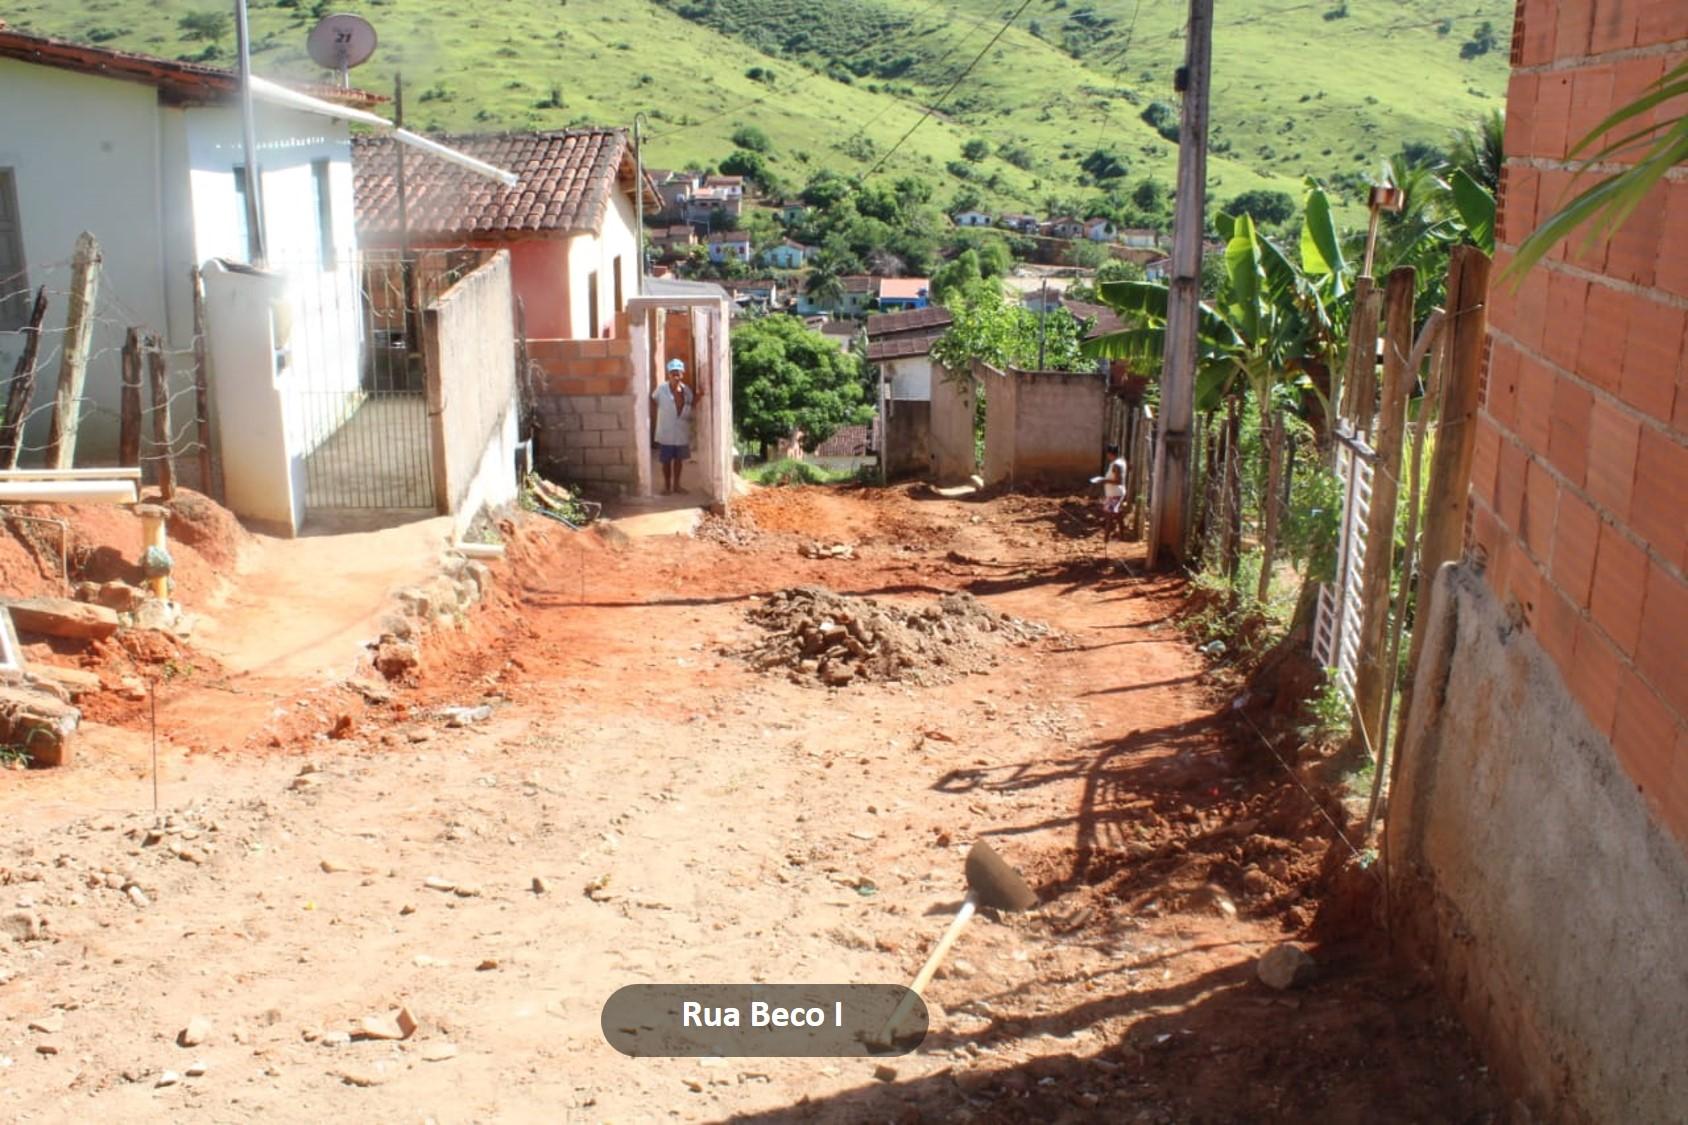 Prefeitura de Itanhém finaliza pavimentação no bairro Monte Santo e dá início a outra rua